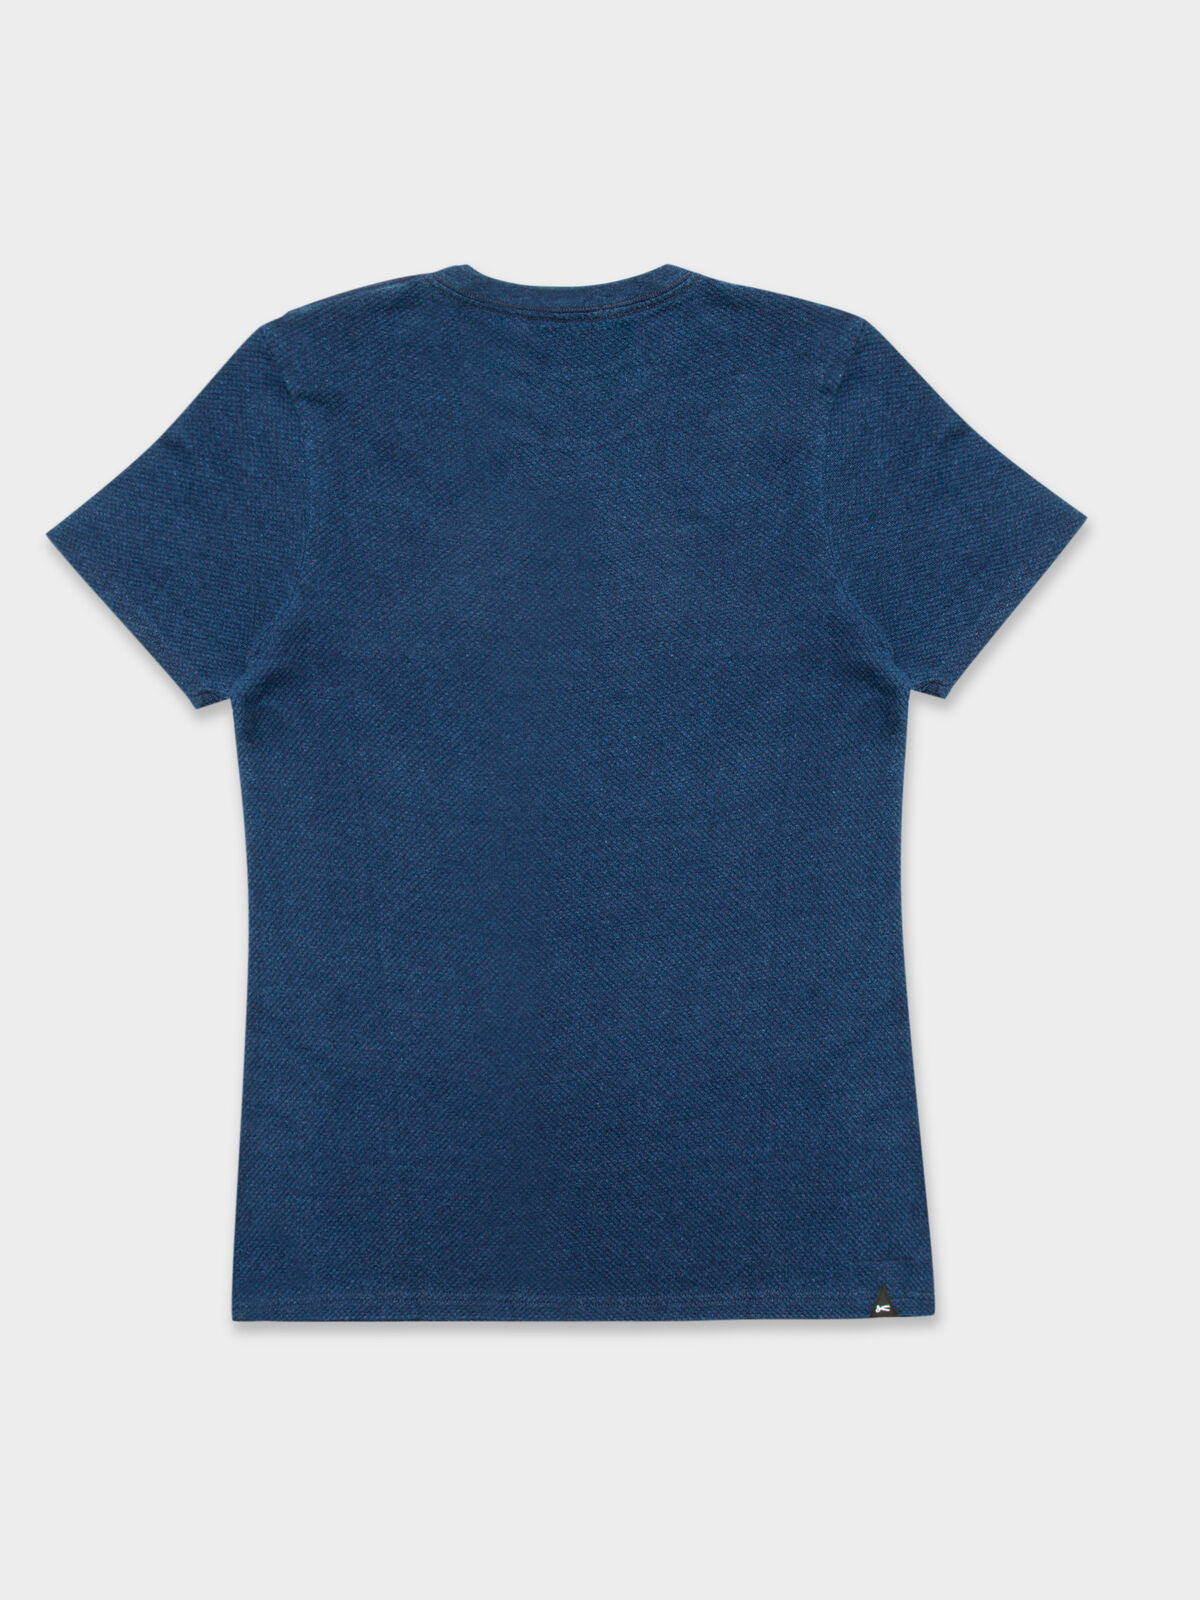 Signature Crew T-Shirt in Denim Blue